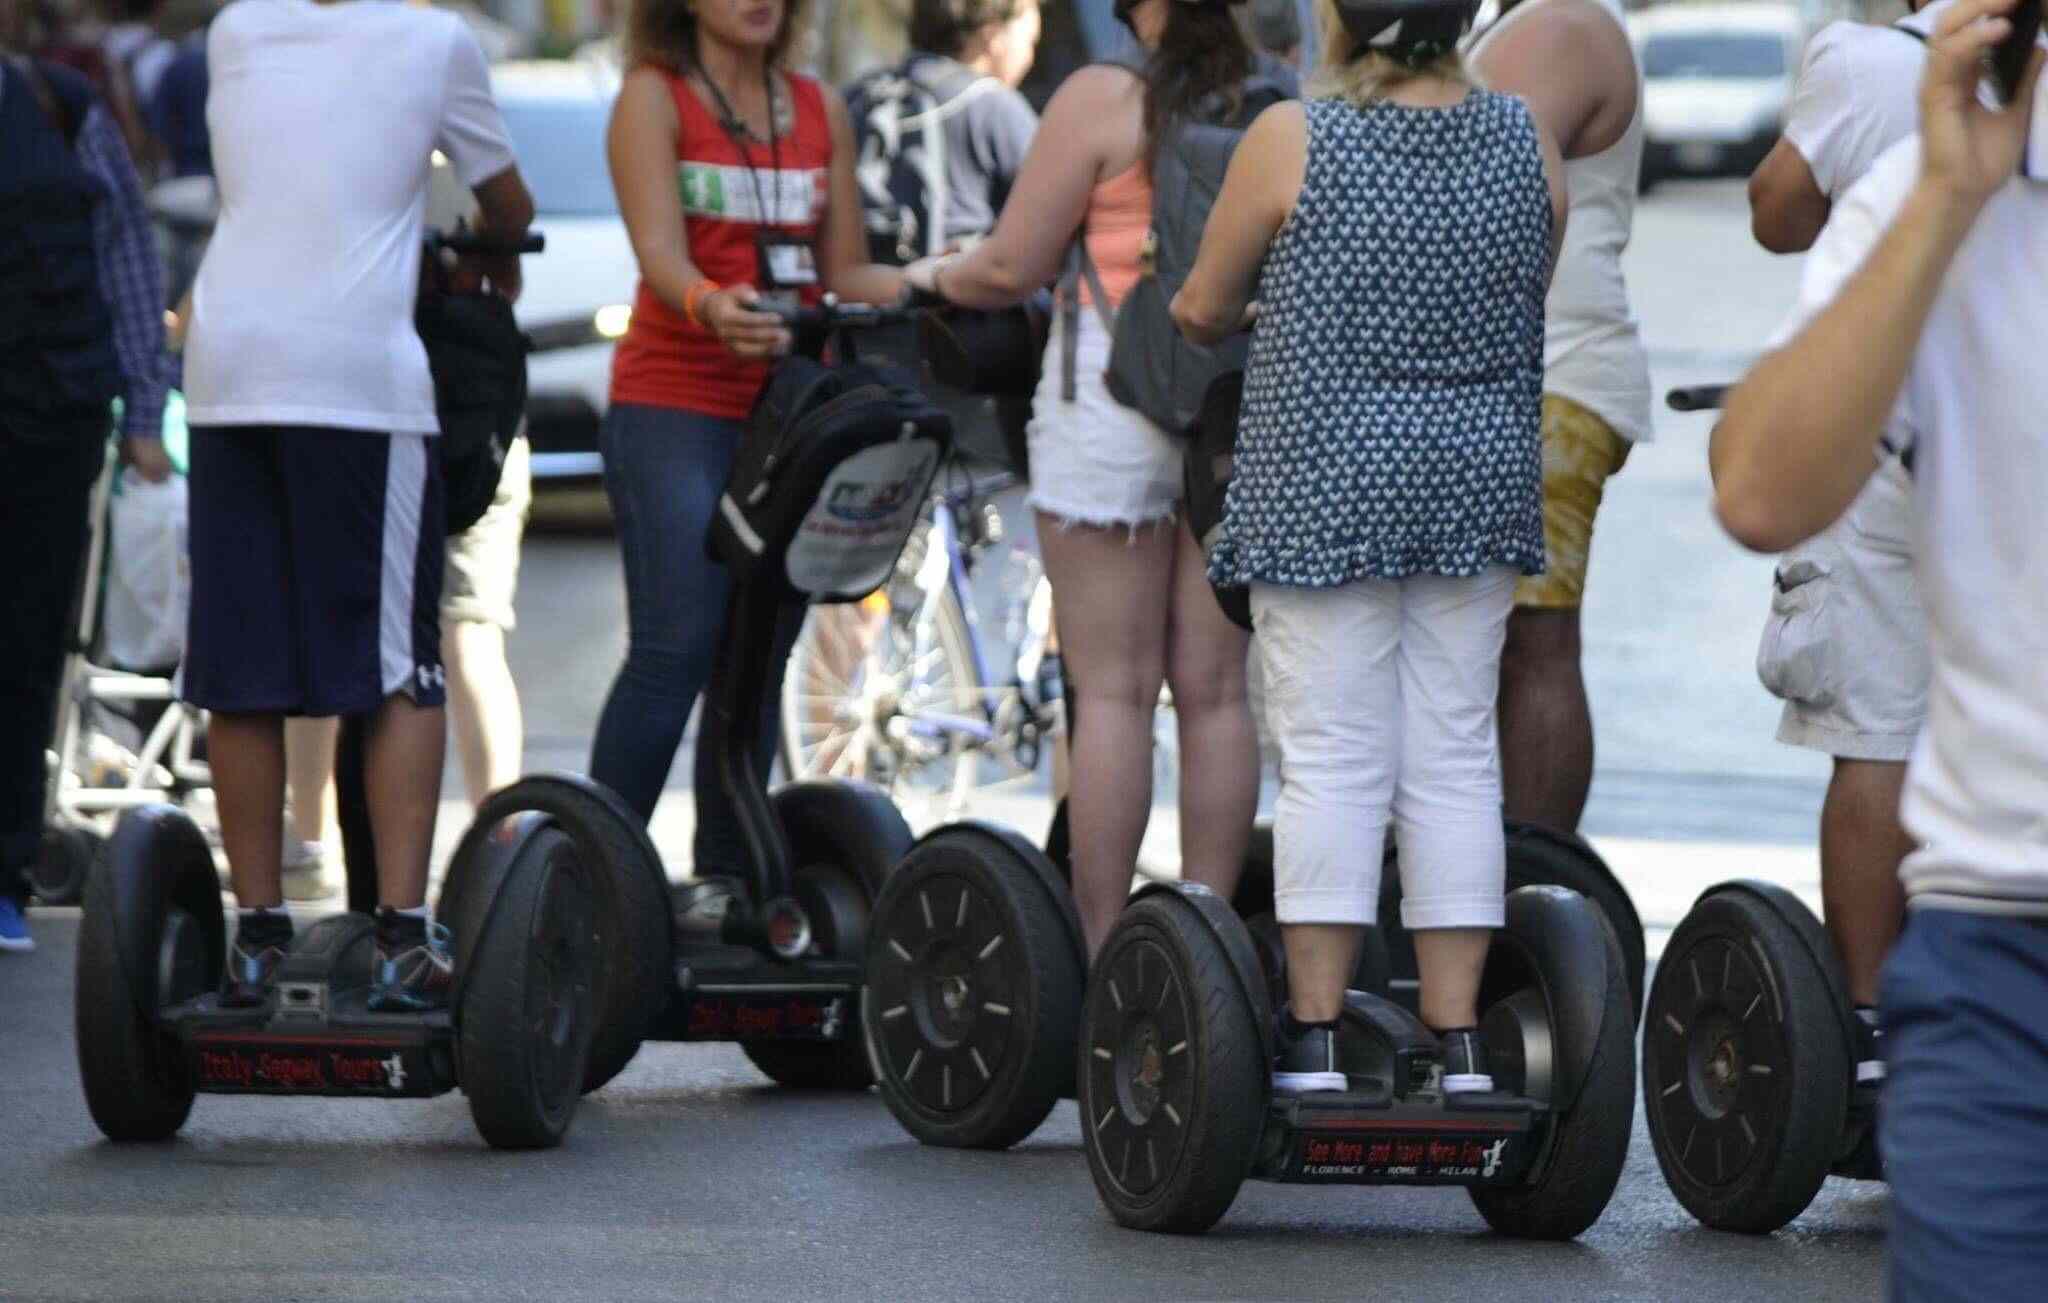 Mensen op Segway-scooters